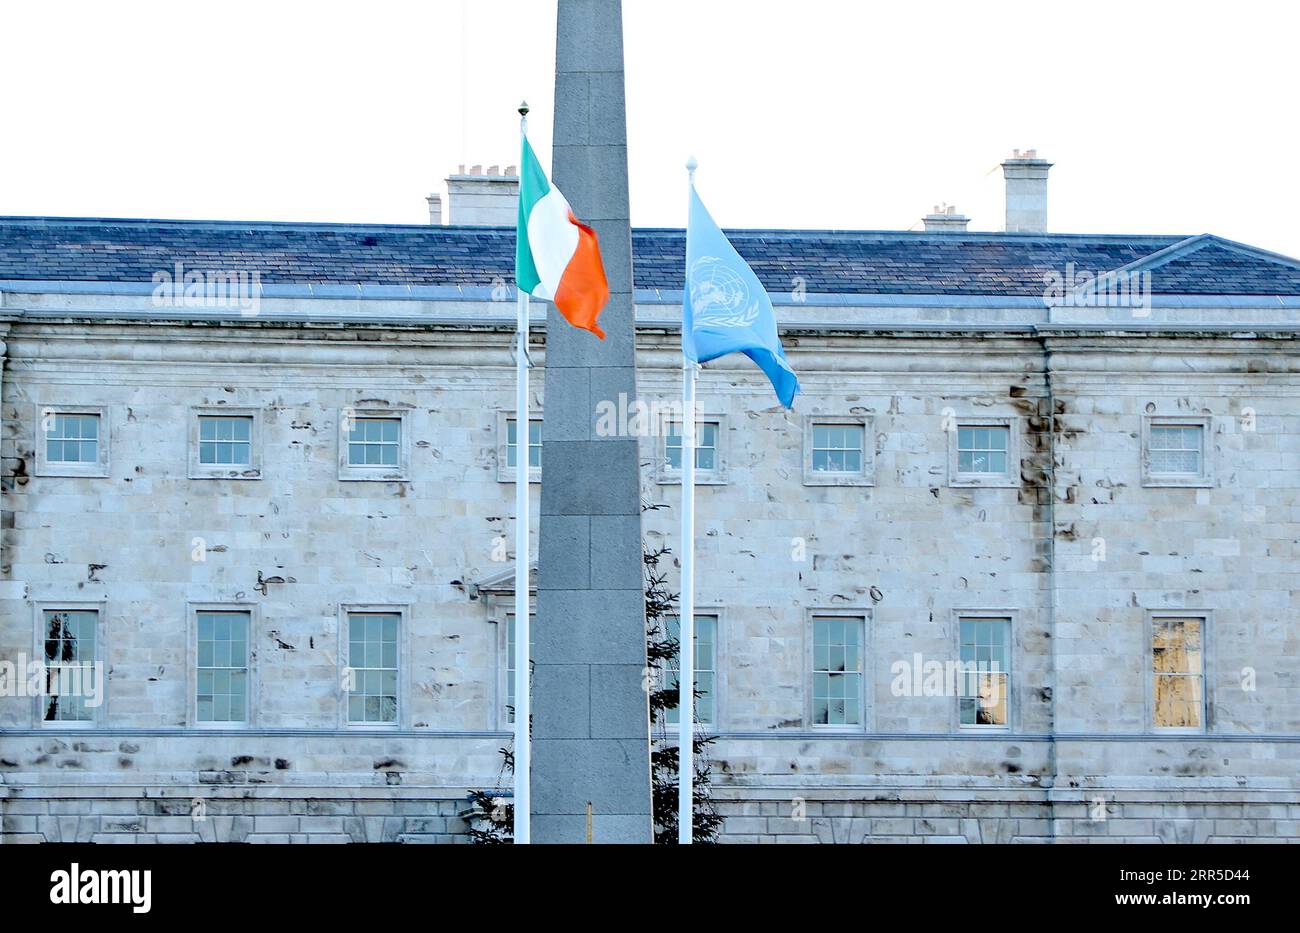 210101 -- DUBLINO, 1 gennaio 2021 -- la bandiera R delle Nazioni Unite è vista sventolare accanto alla bandiera nazionale irlandese a Leinster House a Dublino, Irlanda, 1 gennaio 2021. L'Irlanda ha preso il suo seggio come membro eletto del Consiglio di sicurezza delle Nazioni Unite per un mandato di due anni a partire dal 1° gennaio 2021, ha detto il Dipartimento degli affari Esteri del paese venerdì. IRLANDA-DUBLINO-MEMBRO DEL CONSIGLIO DI SICUREZZA DELLE NAZIONI UNITE XINHUA PUBLICATIONXNOTXINXCHN Foto Stock